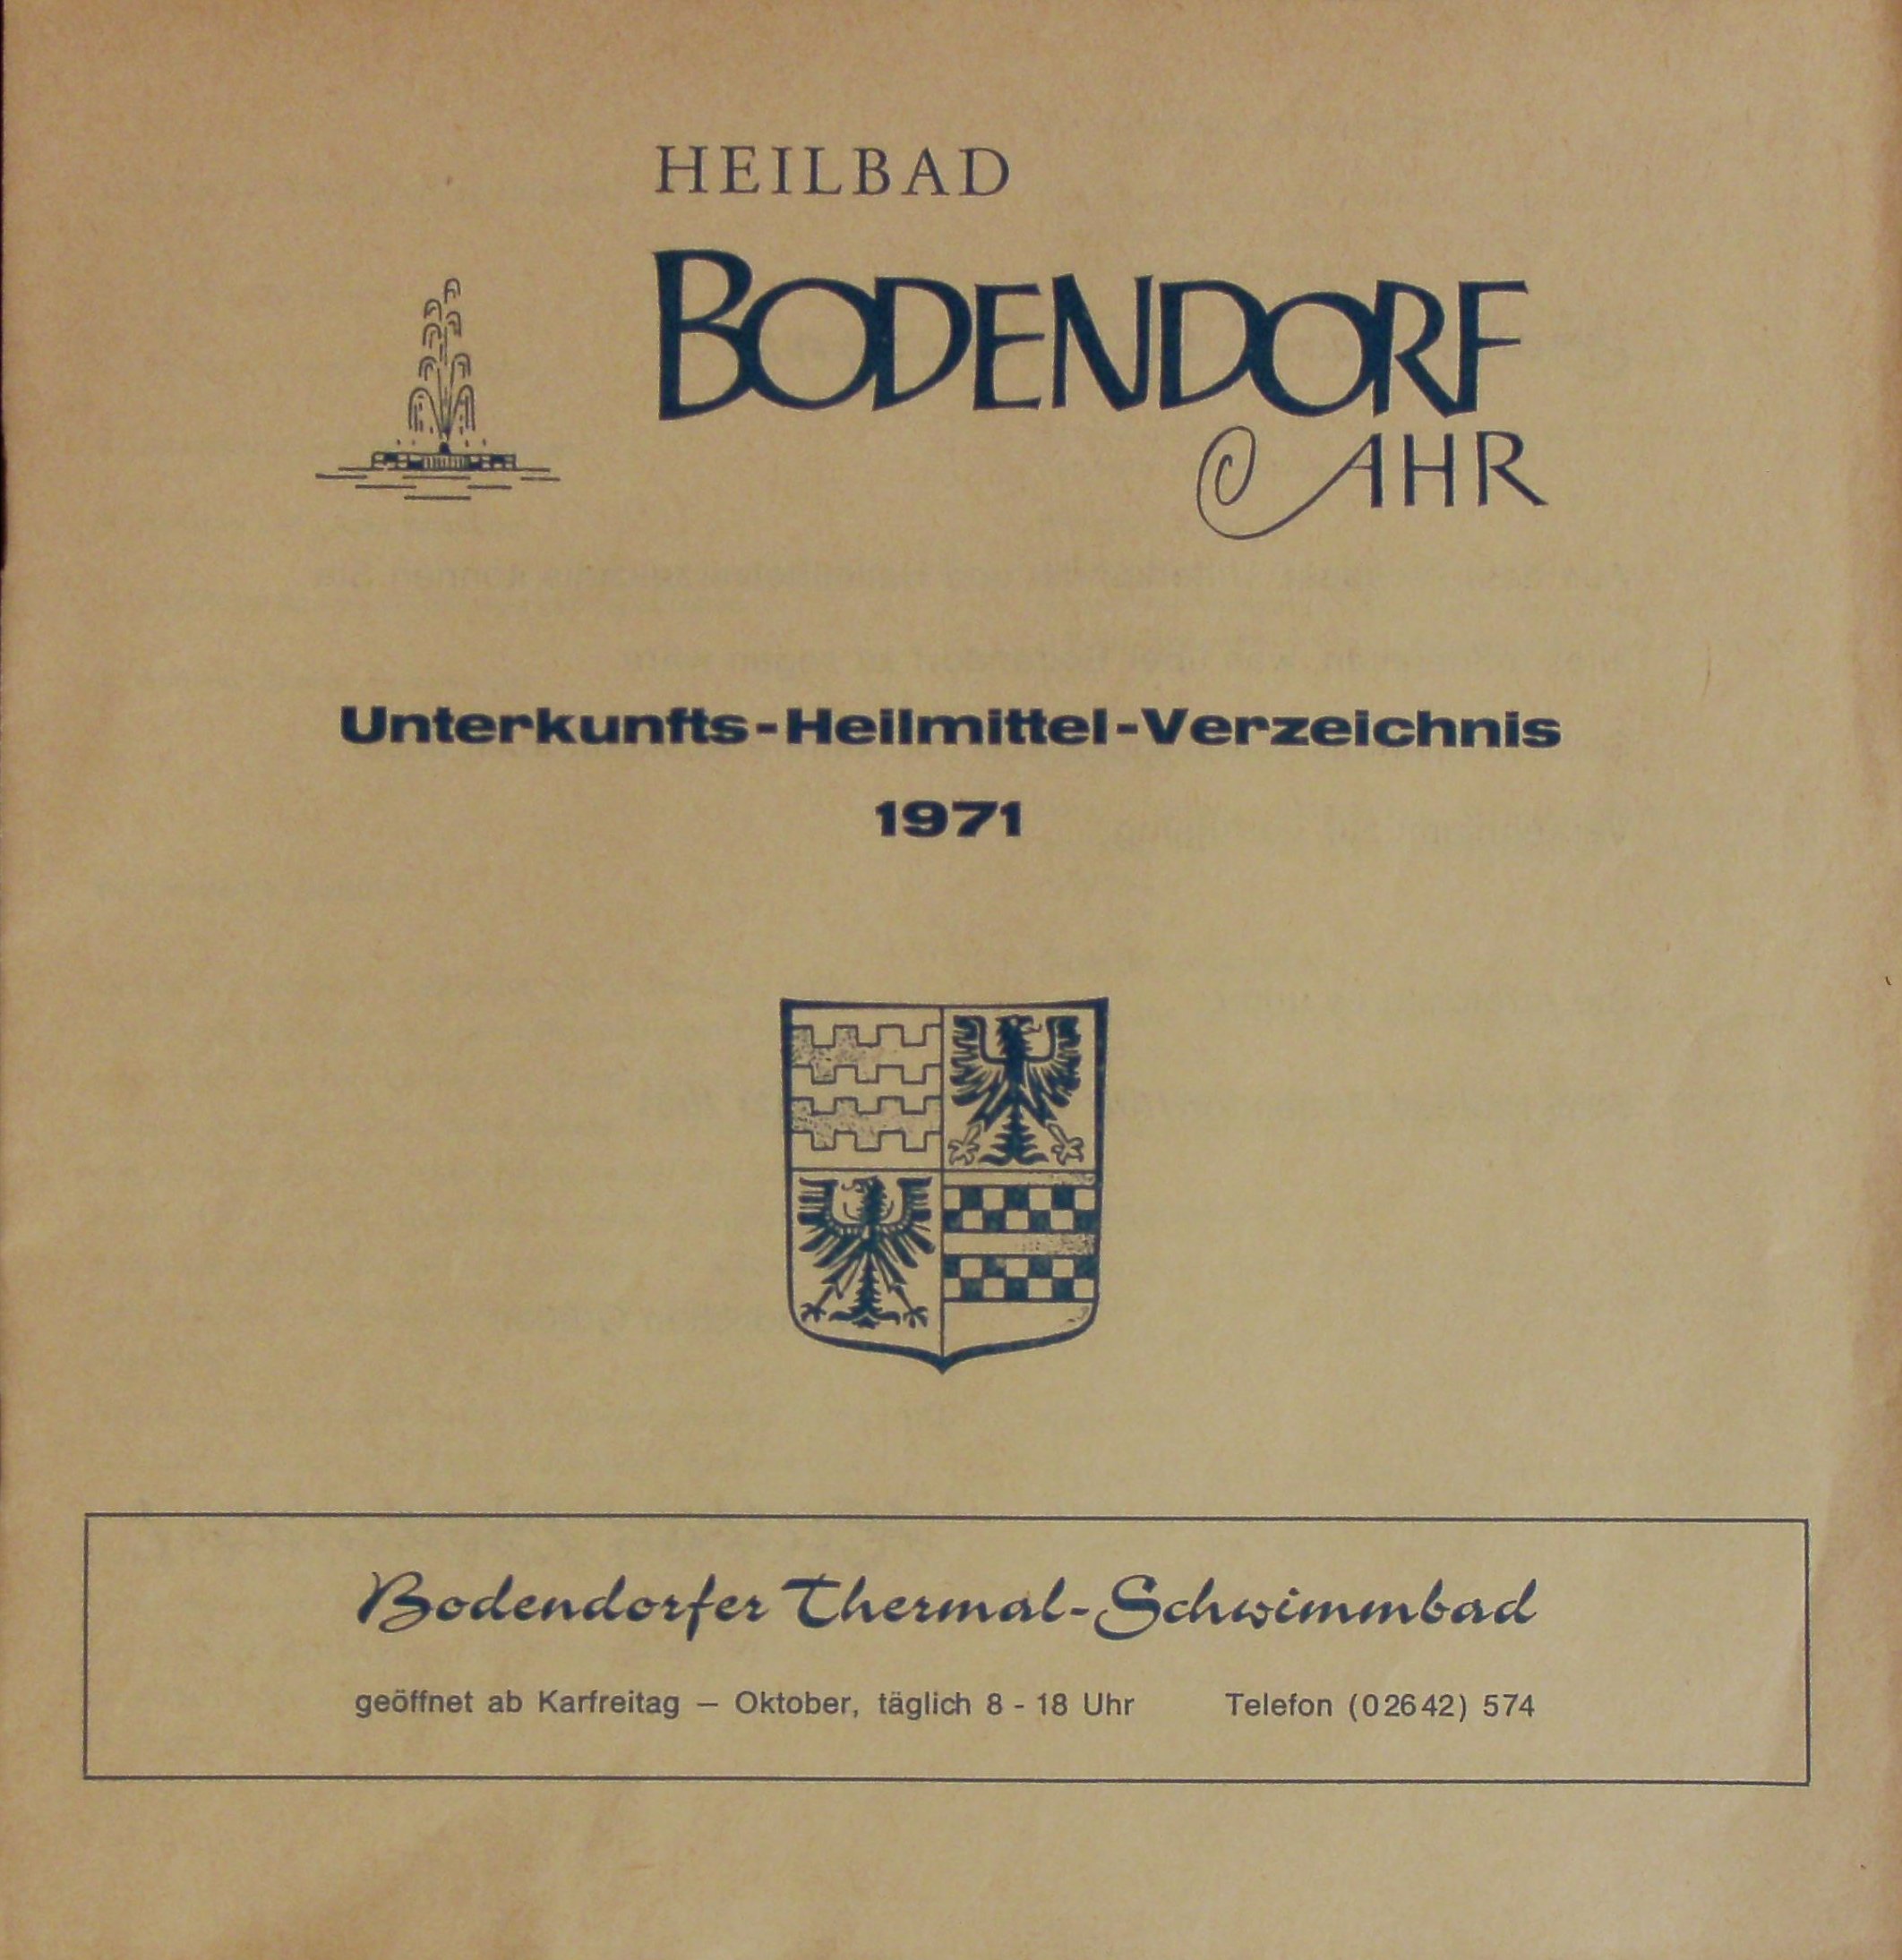 Unterkunfts-Heilmittel-Verzeichnis Heilbad Bodendorf an der Ahr von 1971 (Schulzedruck, Sinzig CC BY-NC-SA)